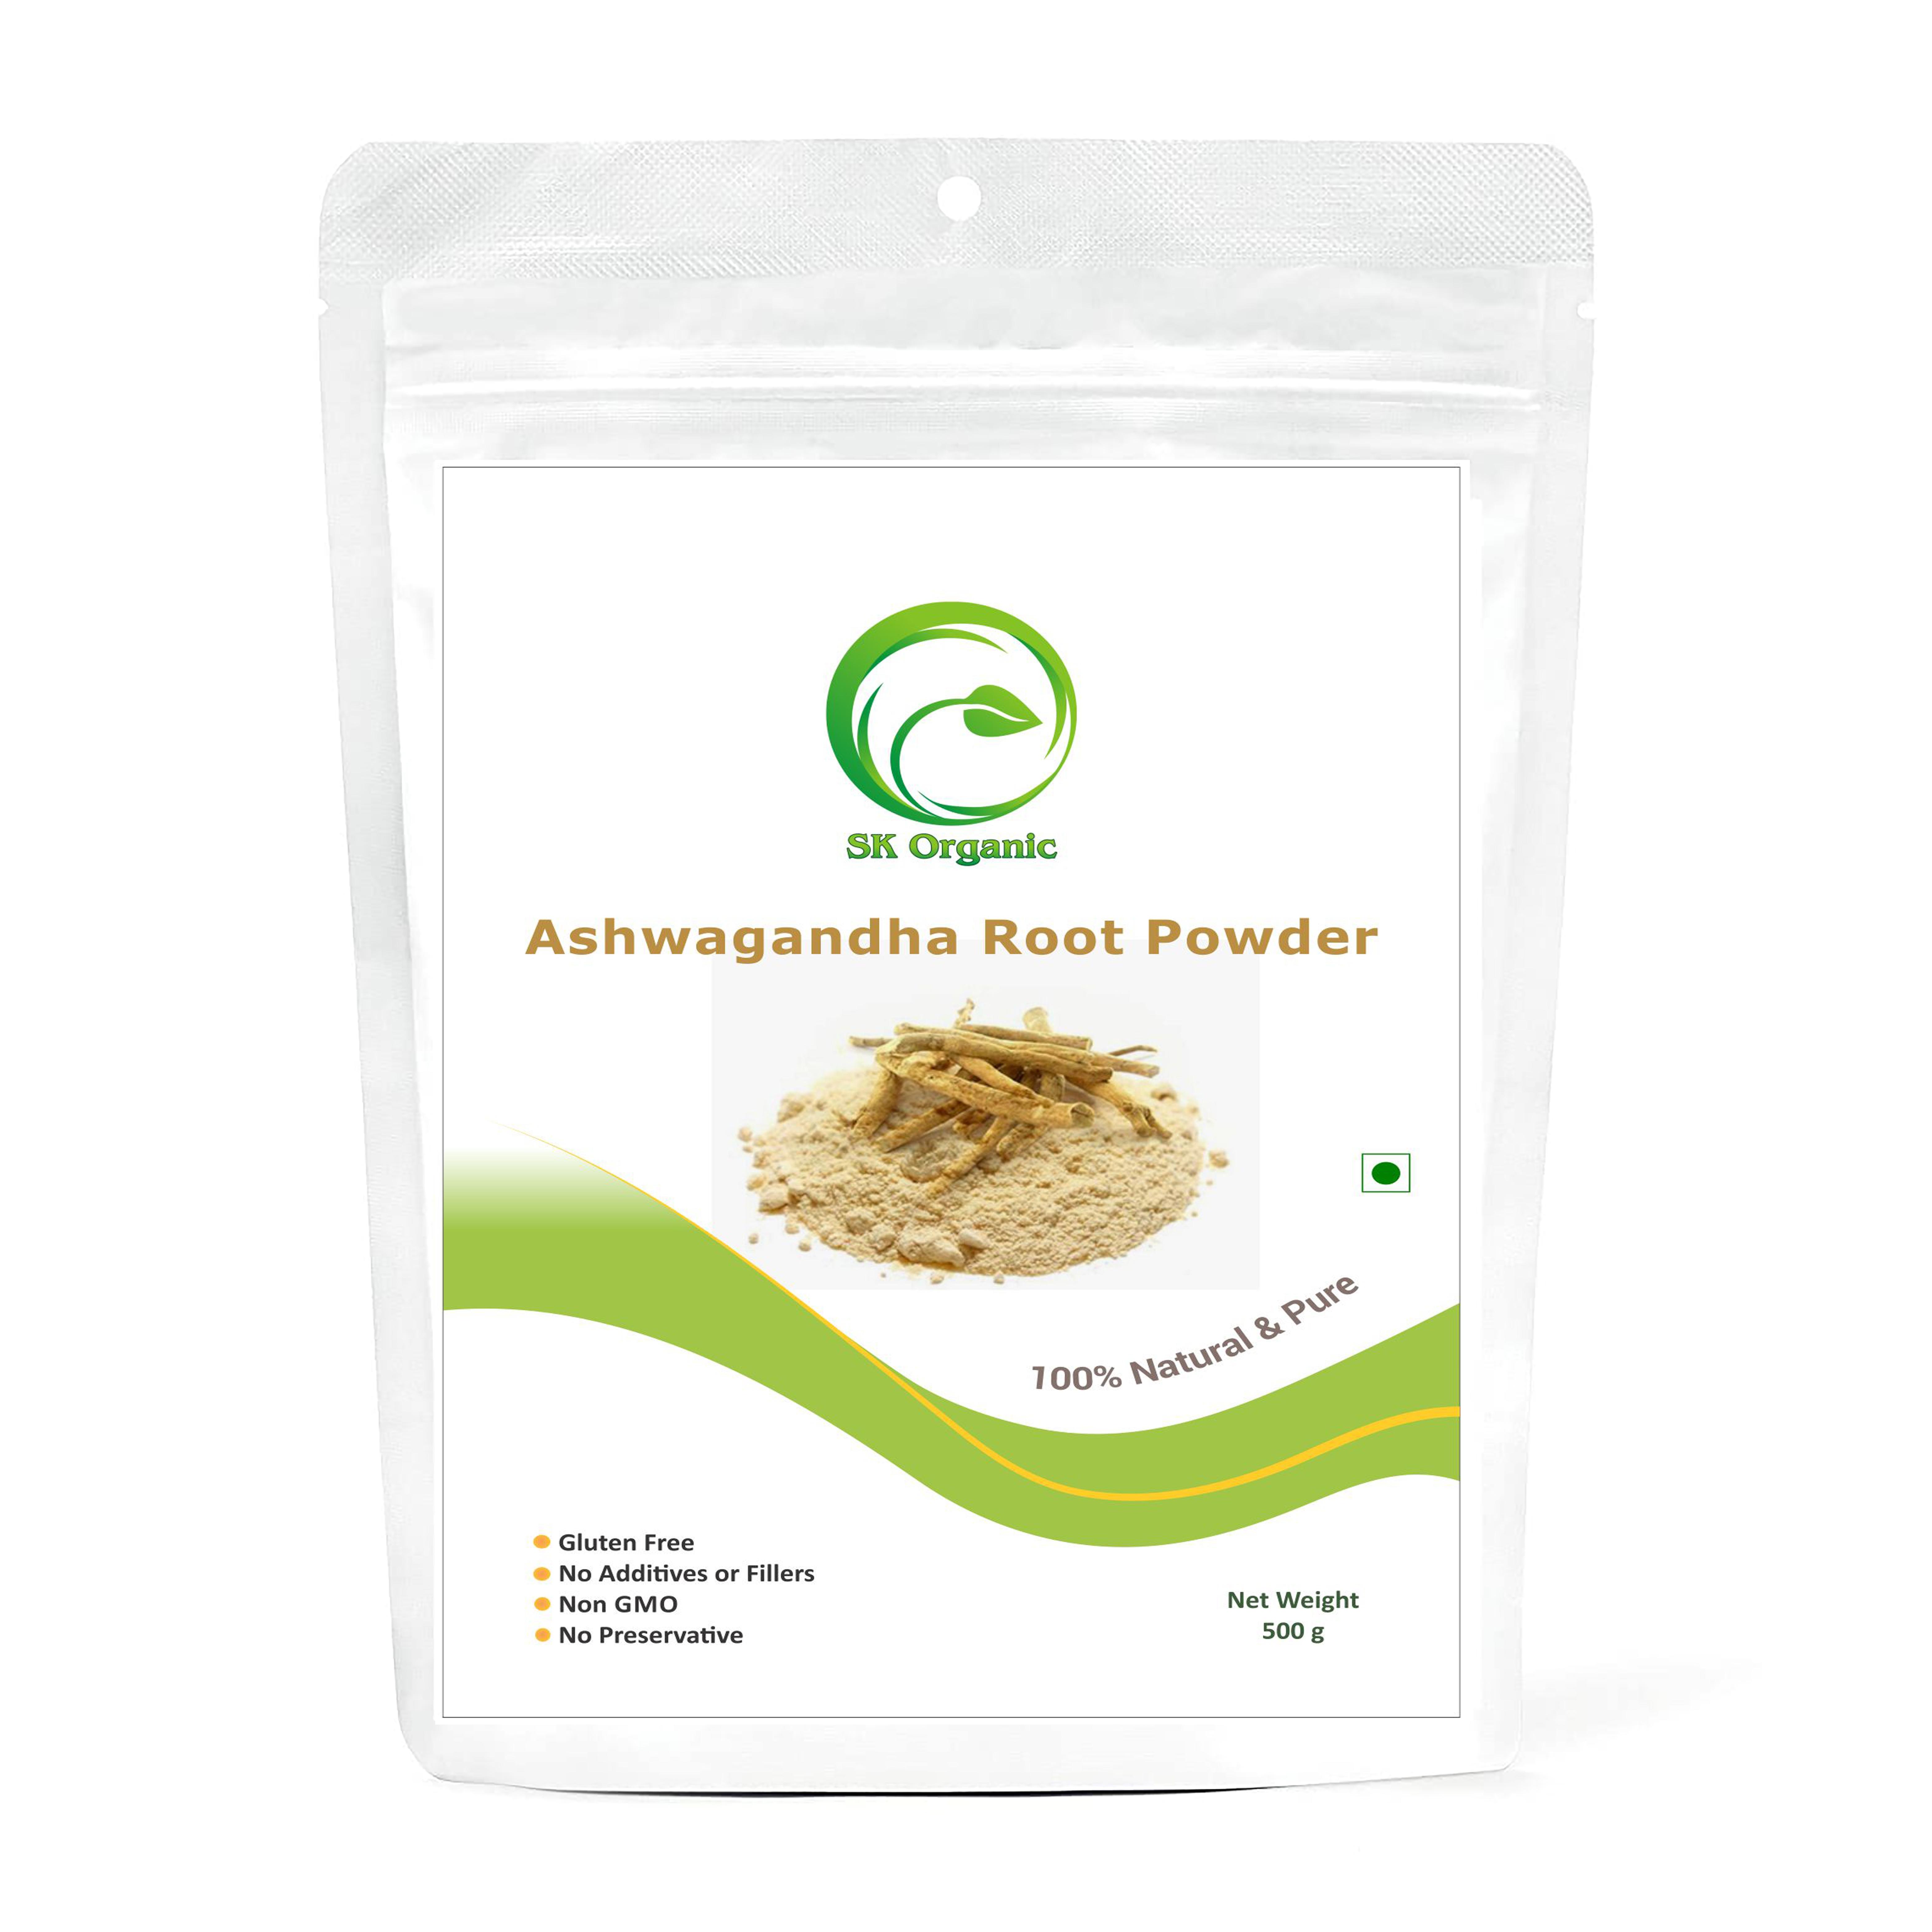 sk organic Ashwagandha root powder herbs for glowing skin and health thumbnail